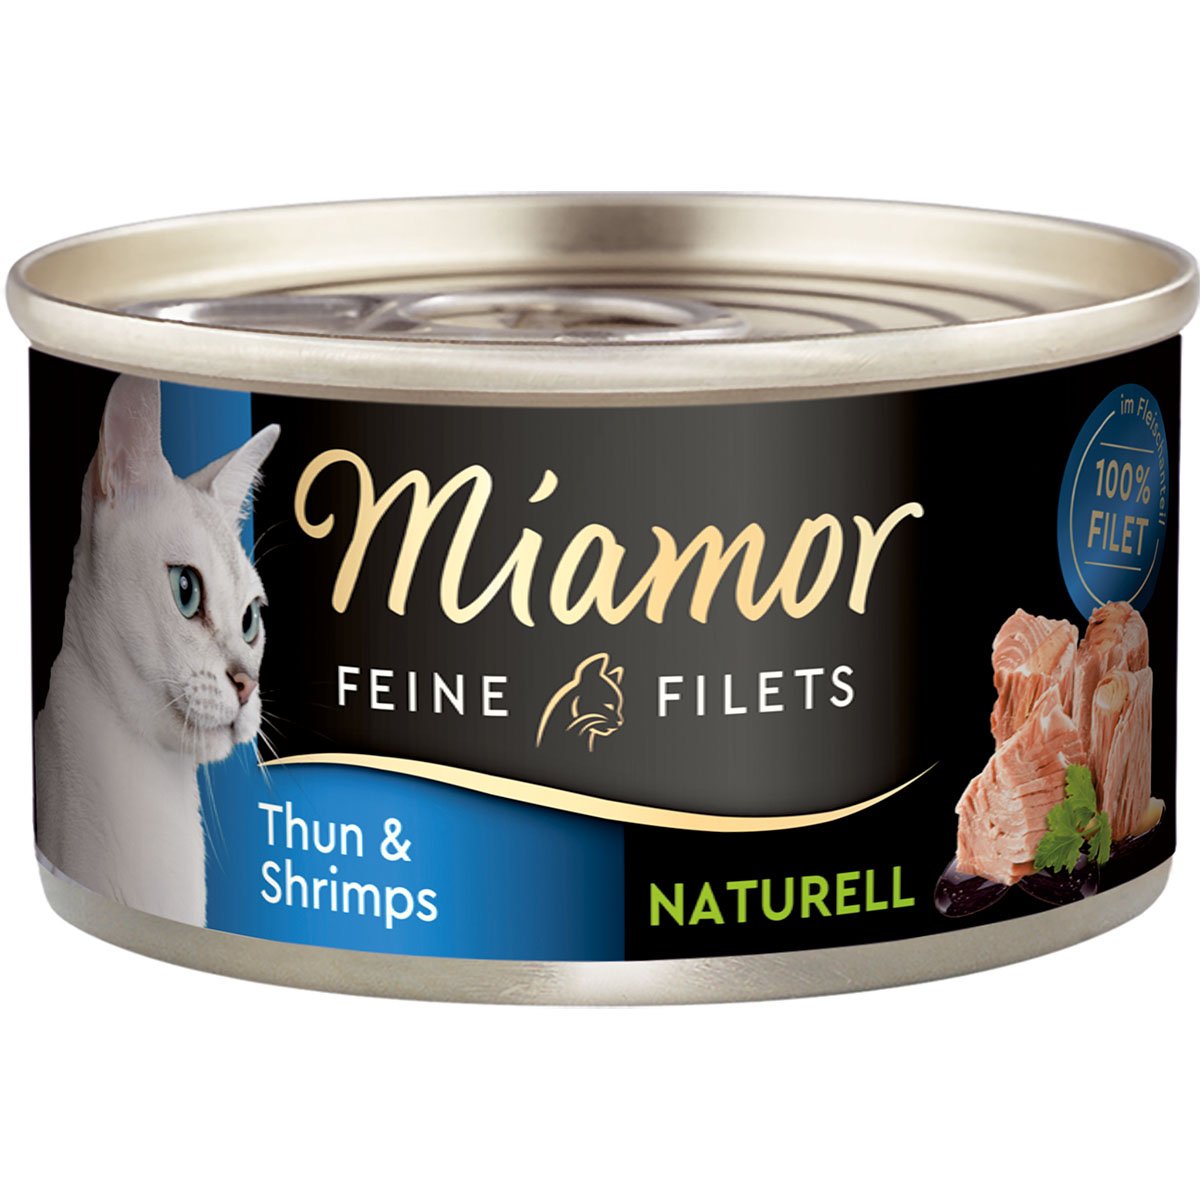 Miamor Feine Filets Naturelle Thunfisch und Shrimps 48x80g